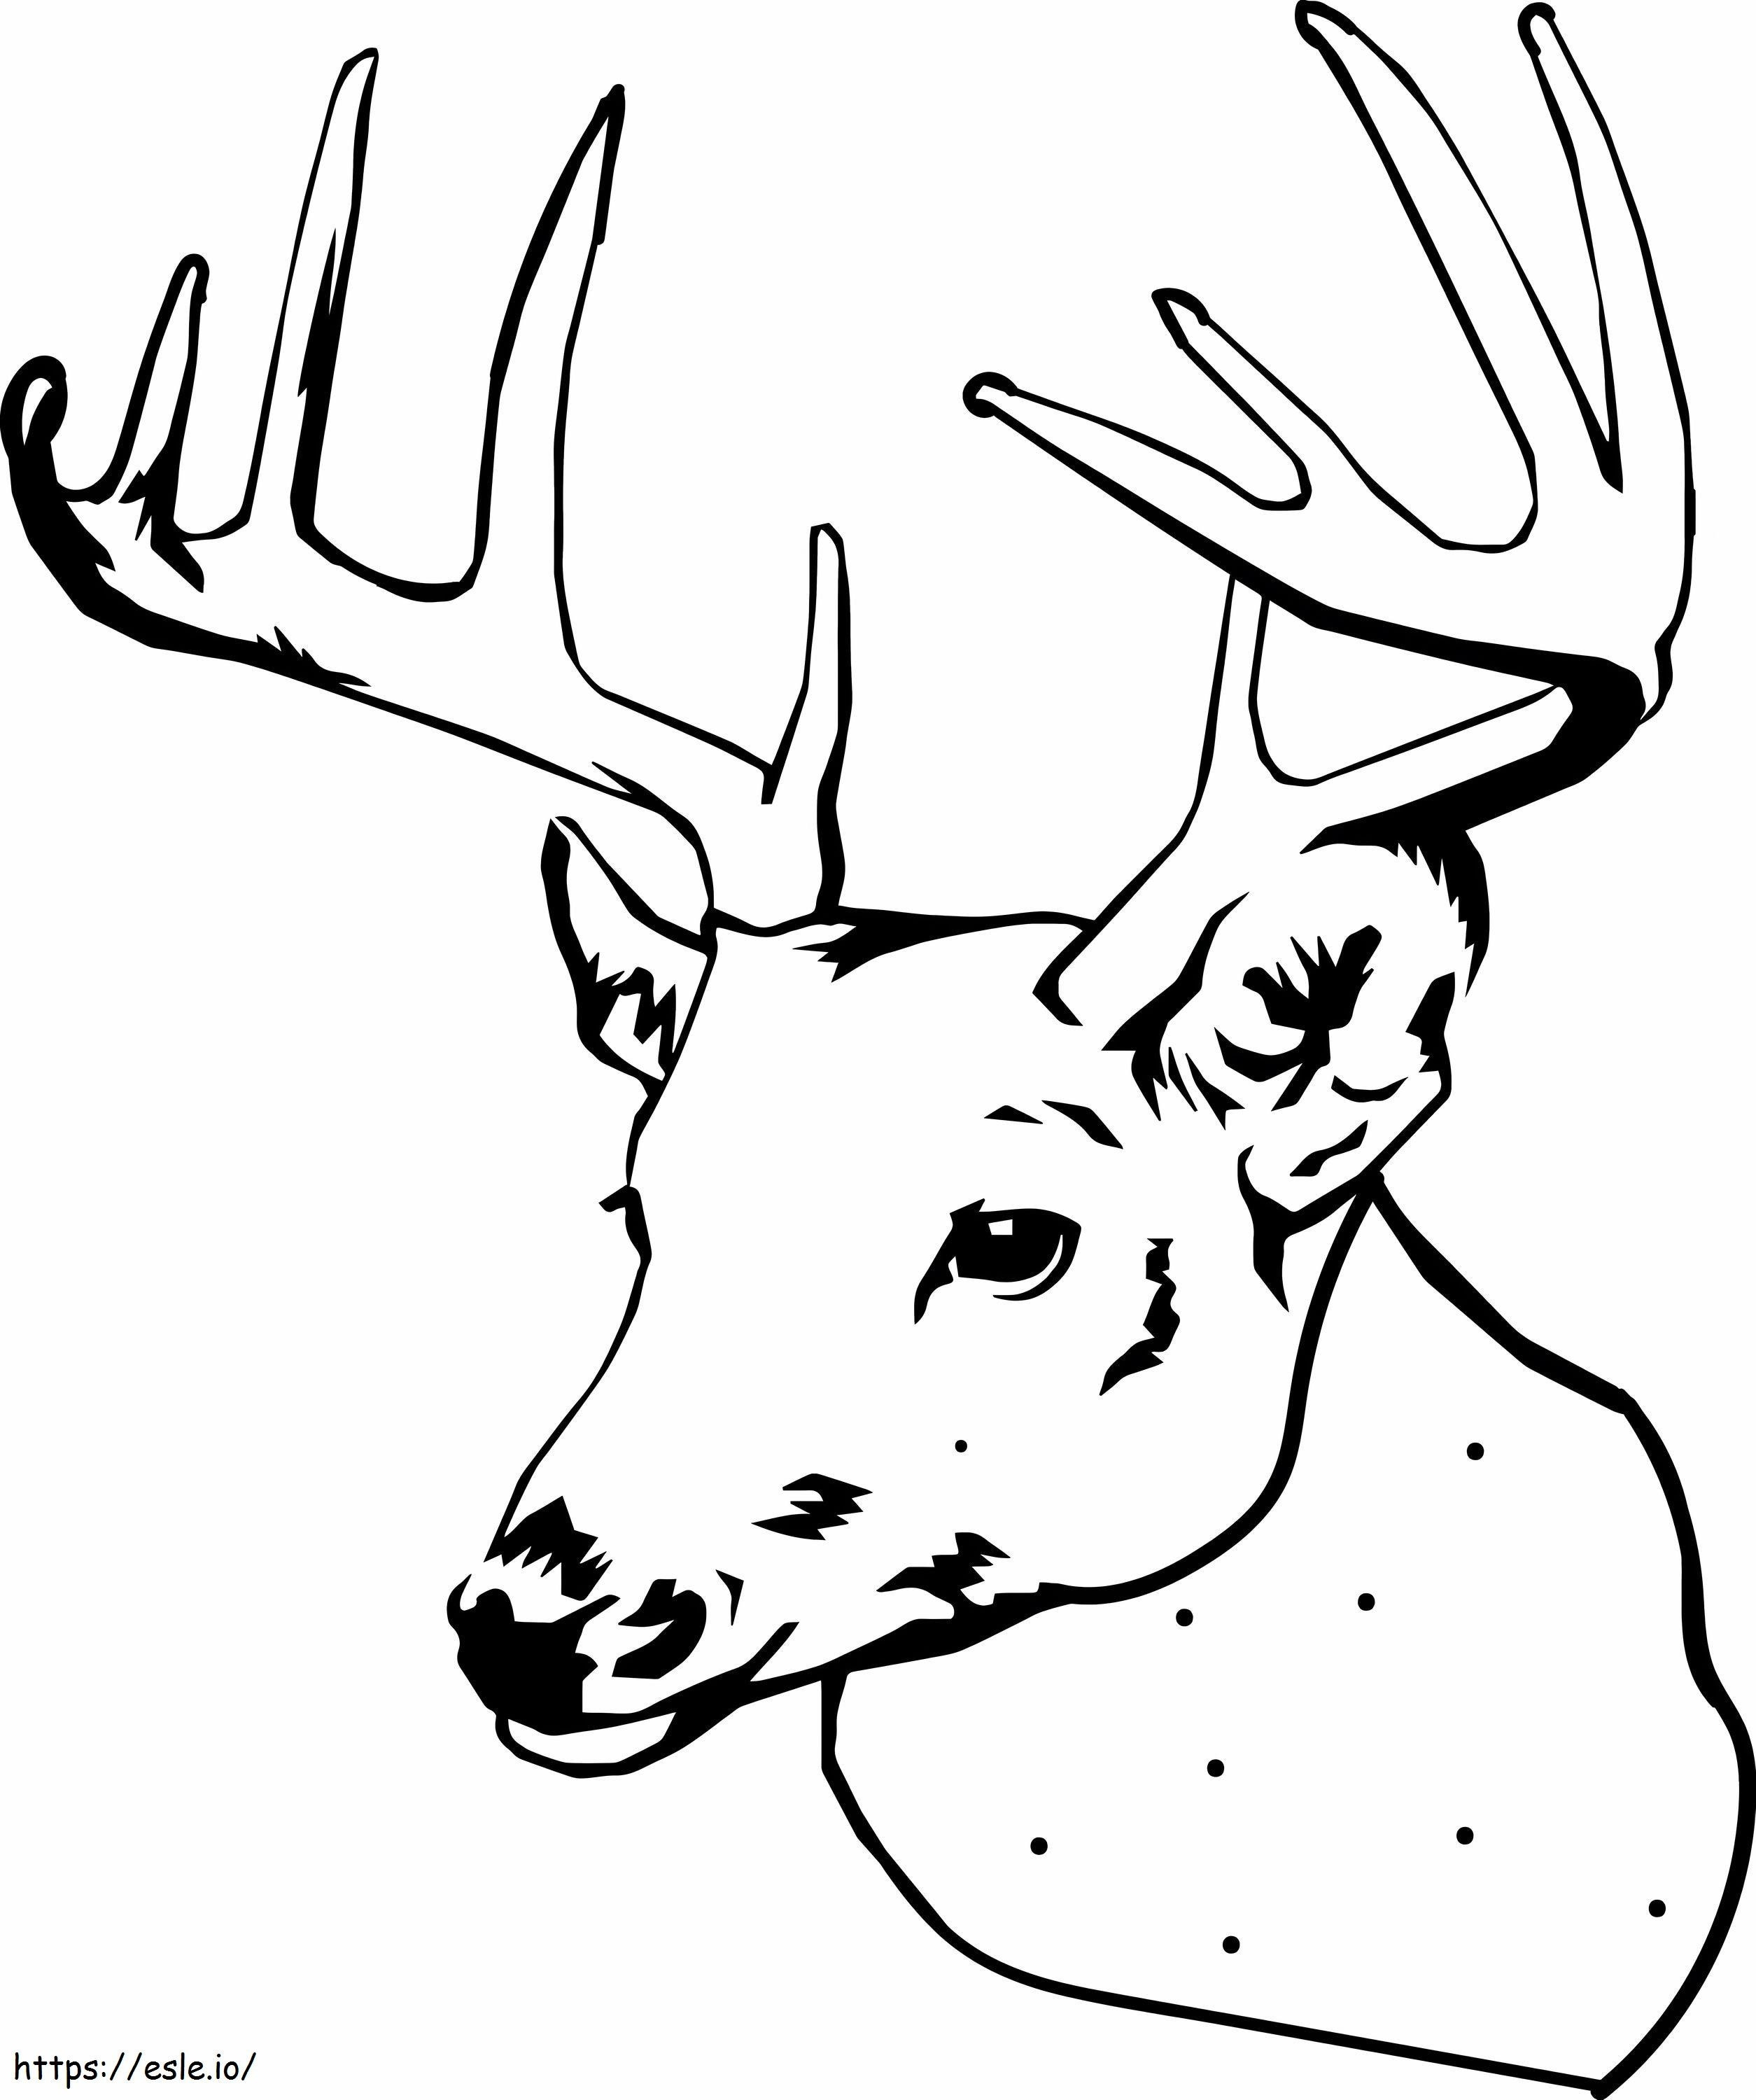 Moose Head coloring page